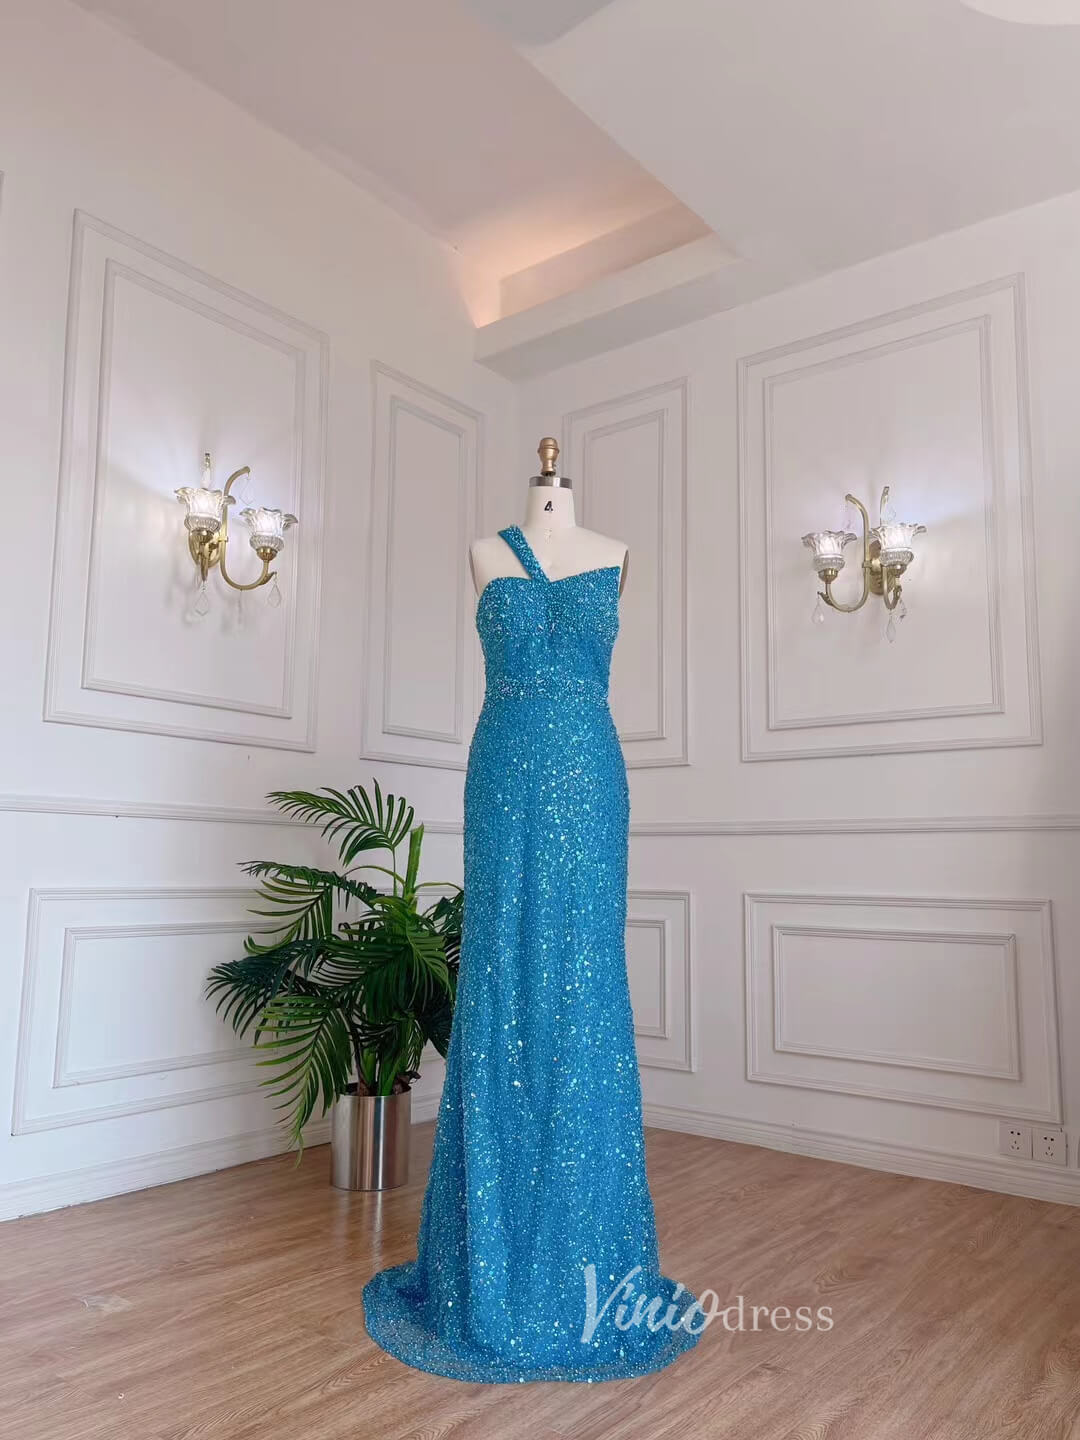 Shimmer Ocean Blue Prom Dresses Beaded Sequin Evening Dress 20074-prom dresses-Viniodress-Blue-US 2-Viniodress